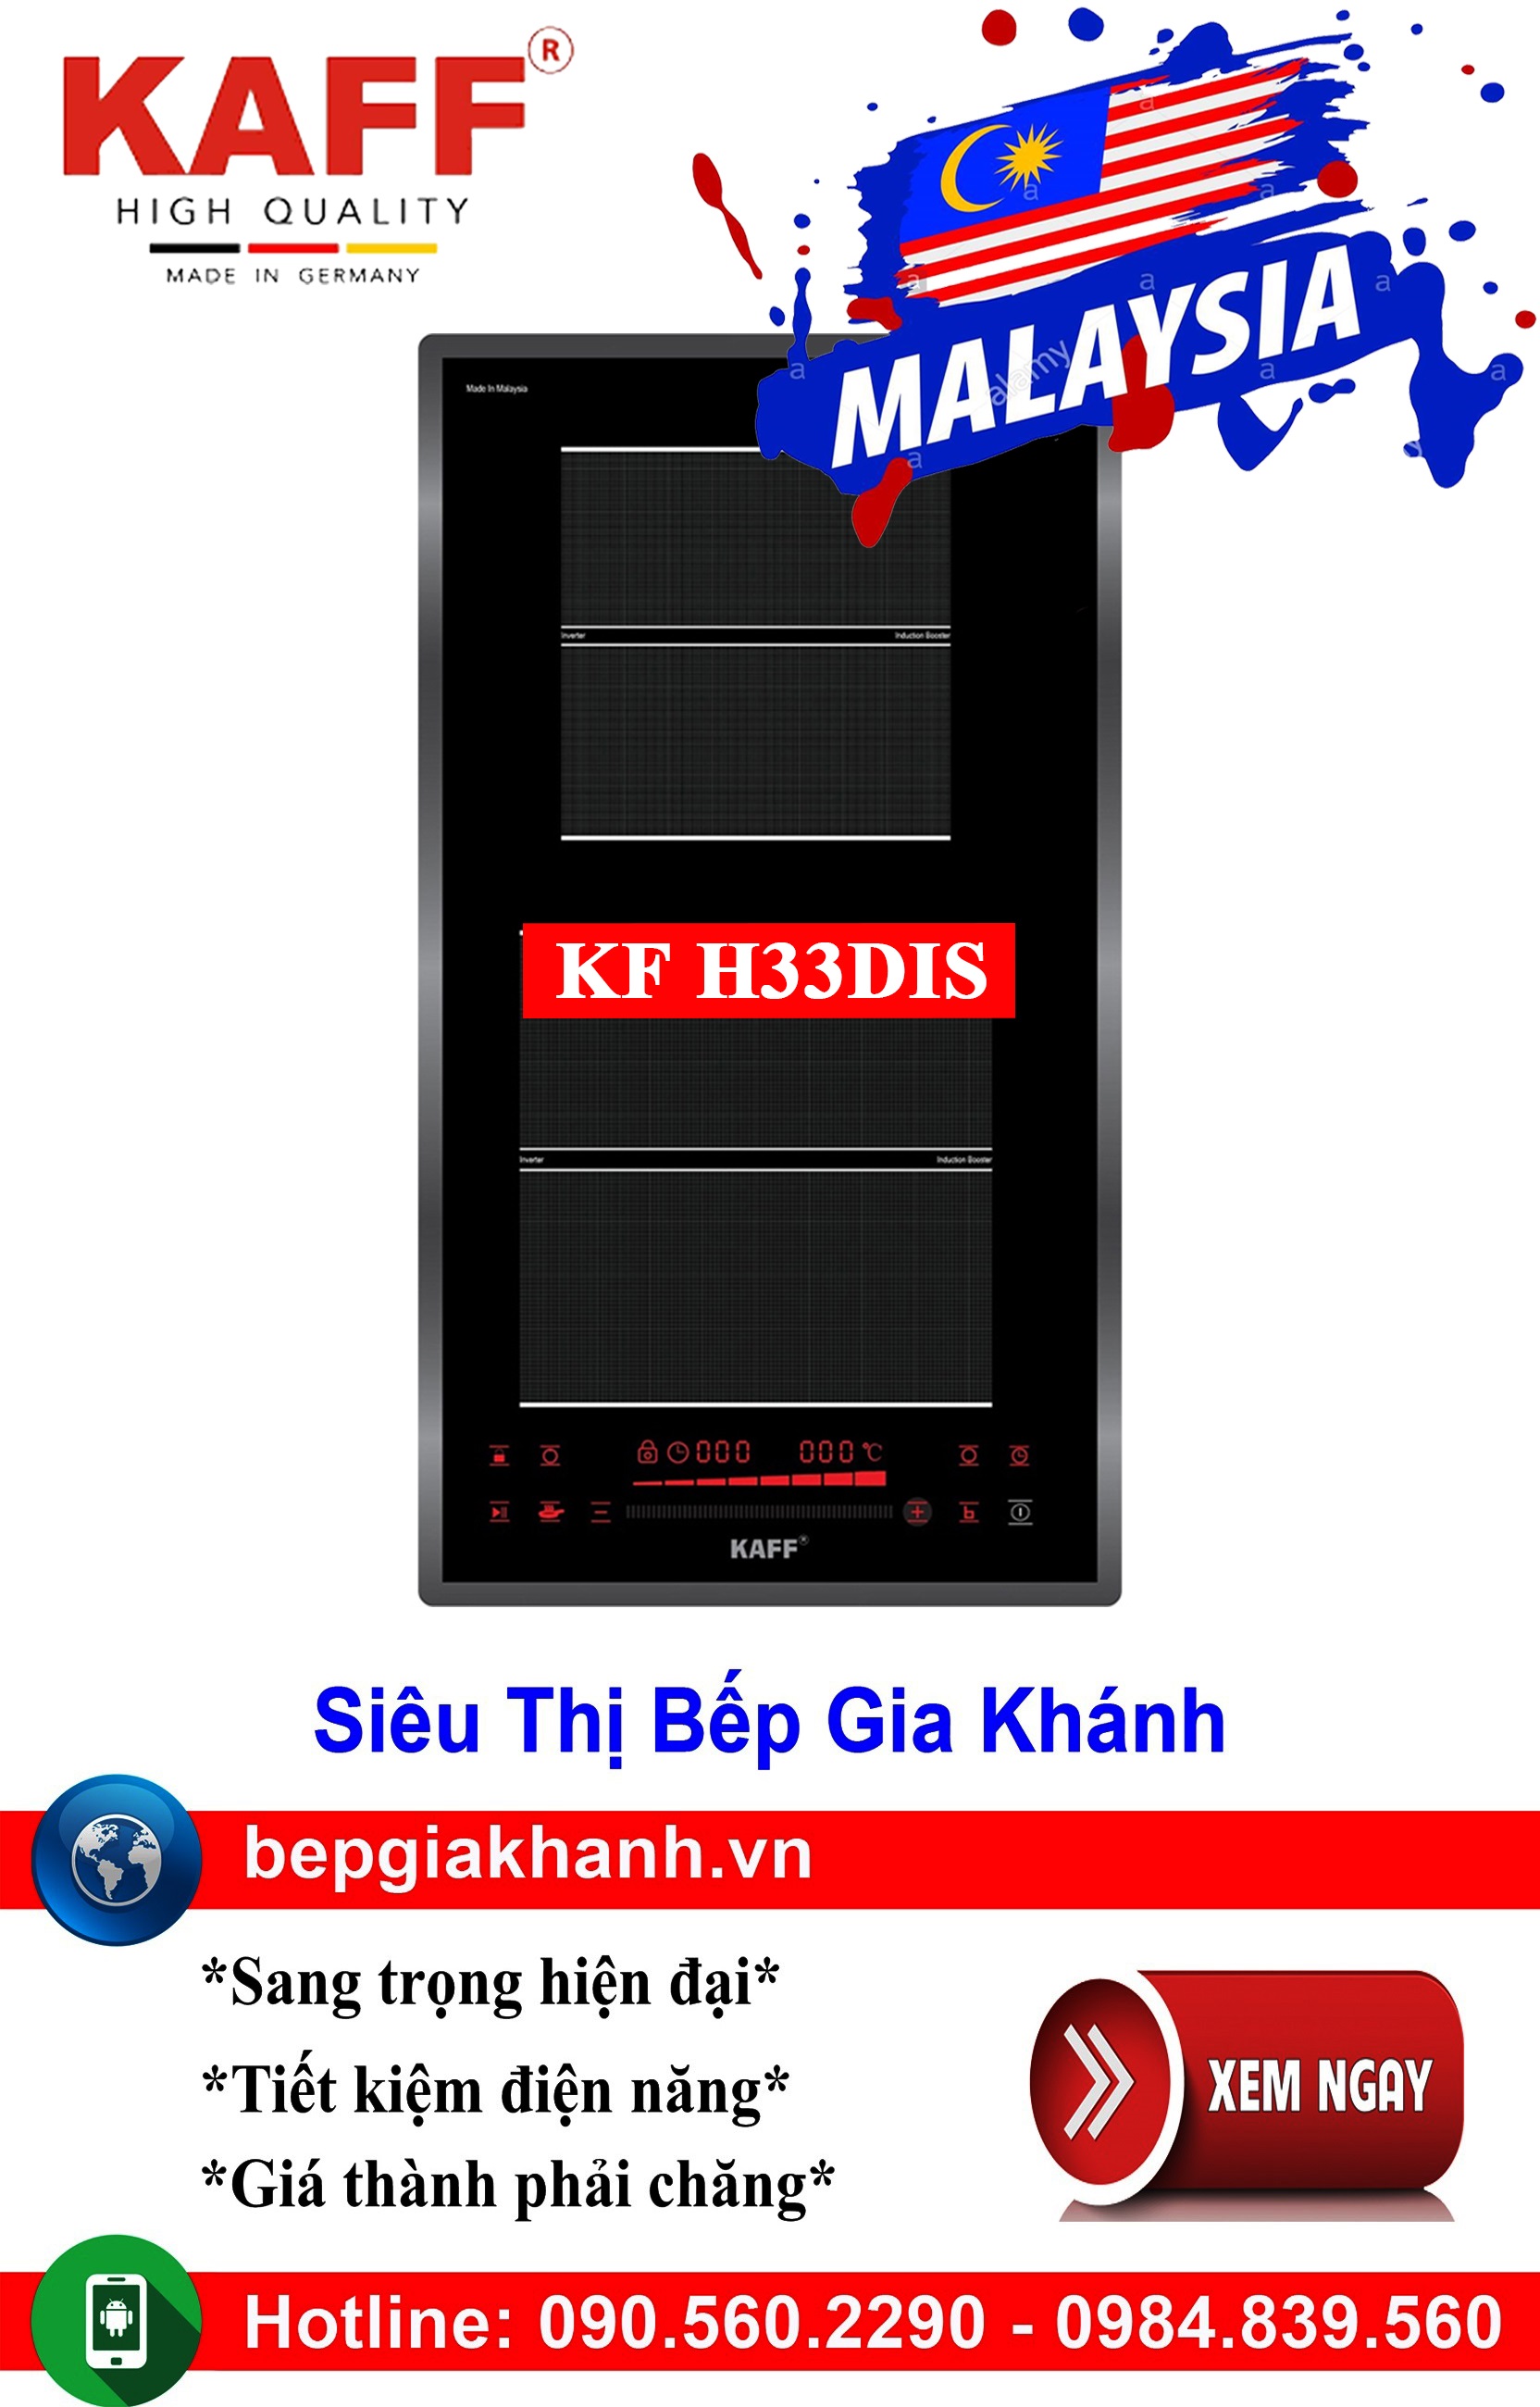 [HCM]Bếp từ domino 2 vùng nấu Kaff KF H33DIS nhập khẩu Malaysia, bếp từ, bếp điện từ, bếp từ đôi, bếp điện từ đôi, bếp từ giá rẻ, bếp điện từ giá rẻ, bếp từ đơn, bep tu don, bep tu